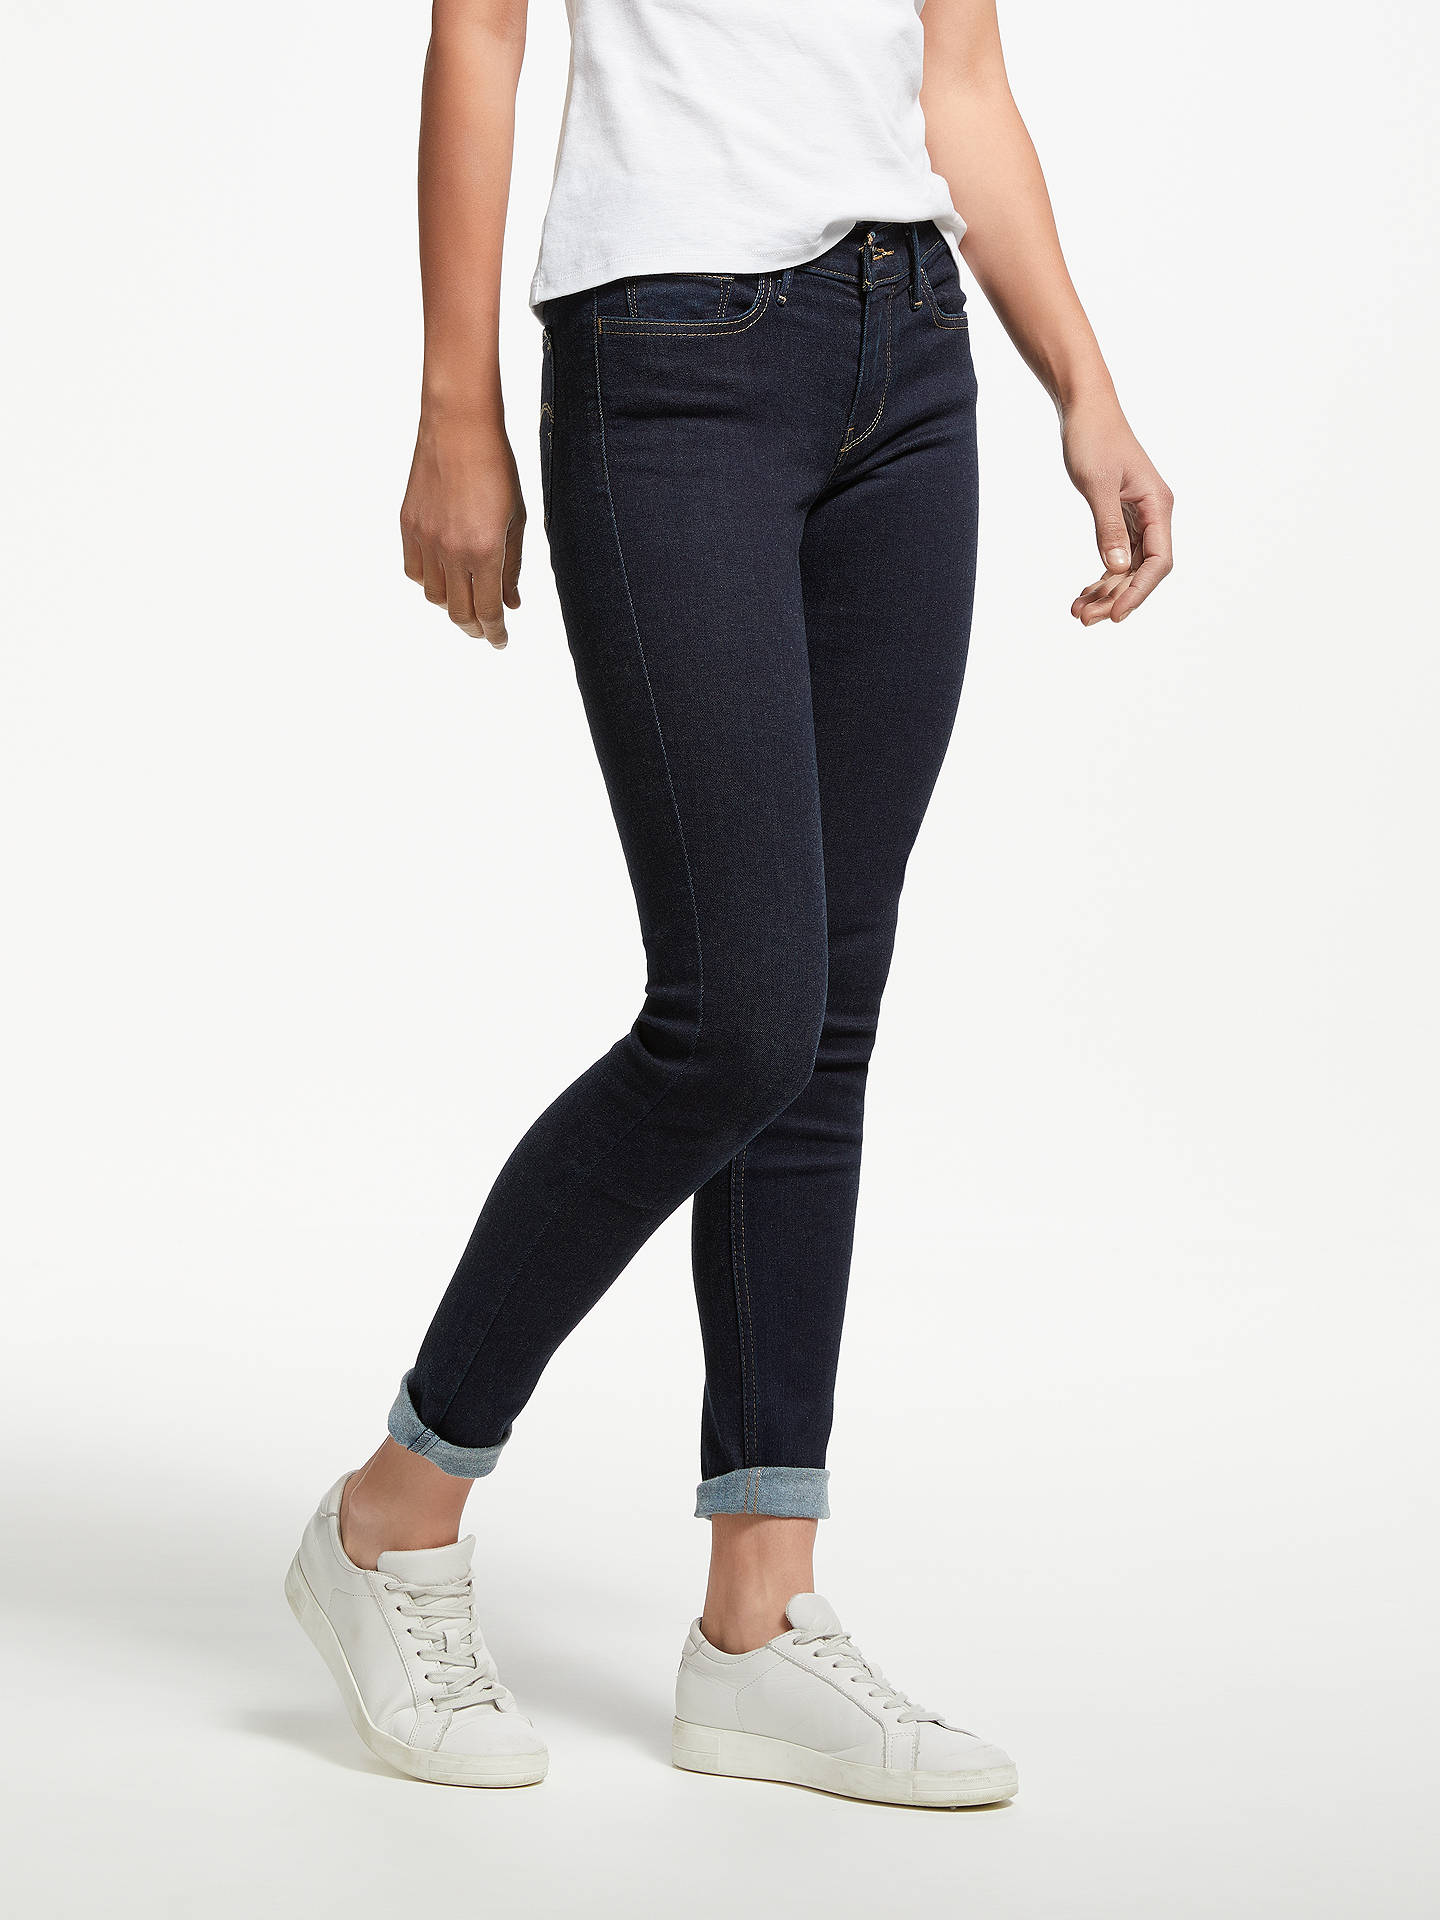 HUDSON Jeans | Krista Super Skinny Ankle Jeans | Nordstrom 